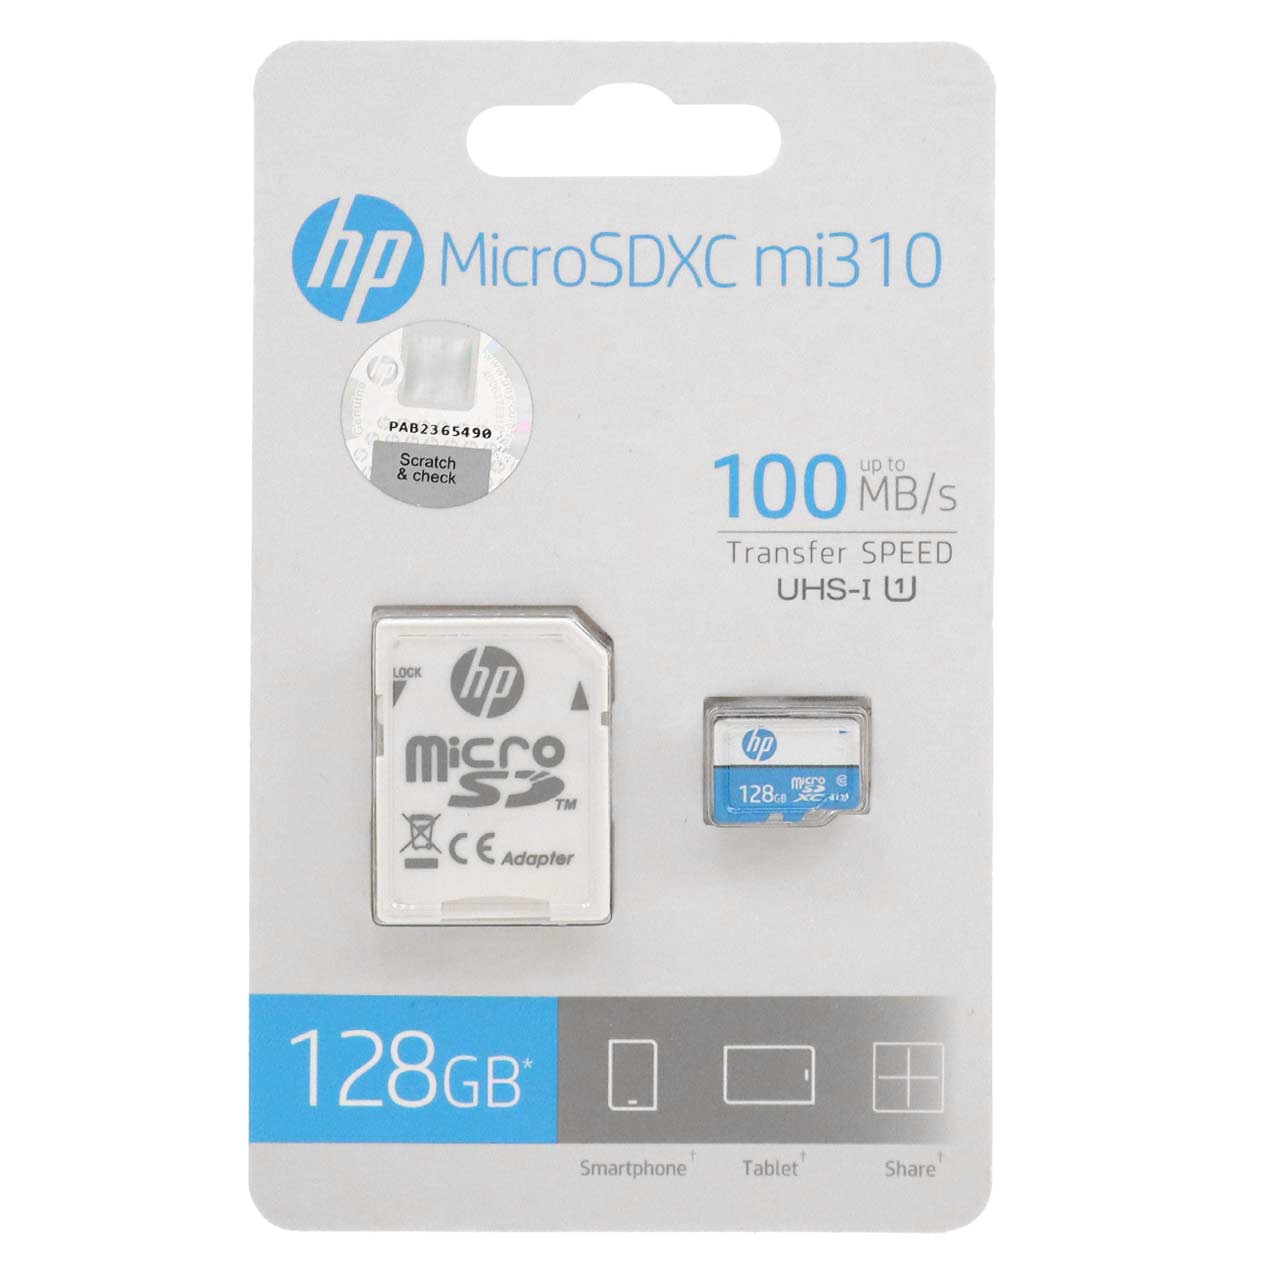 HP mi310 U1 microSDXC & adapter Class 10 A1-100MB/s - 128GB (گارانتی سورین)